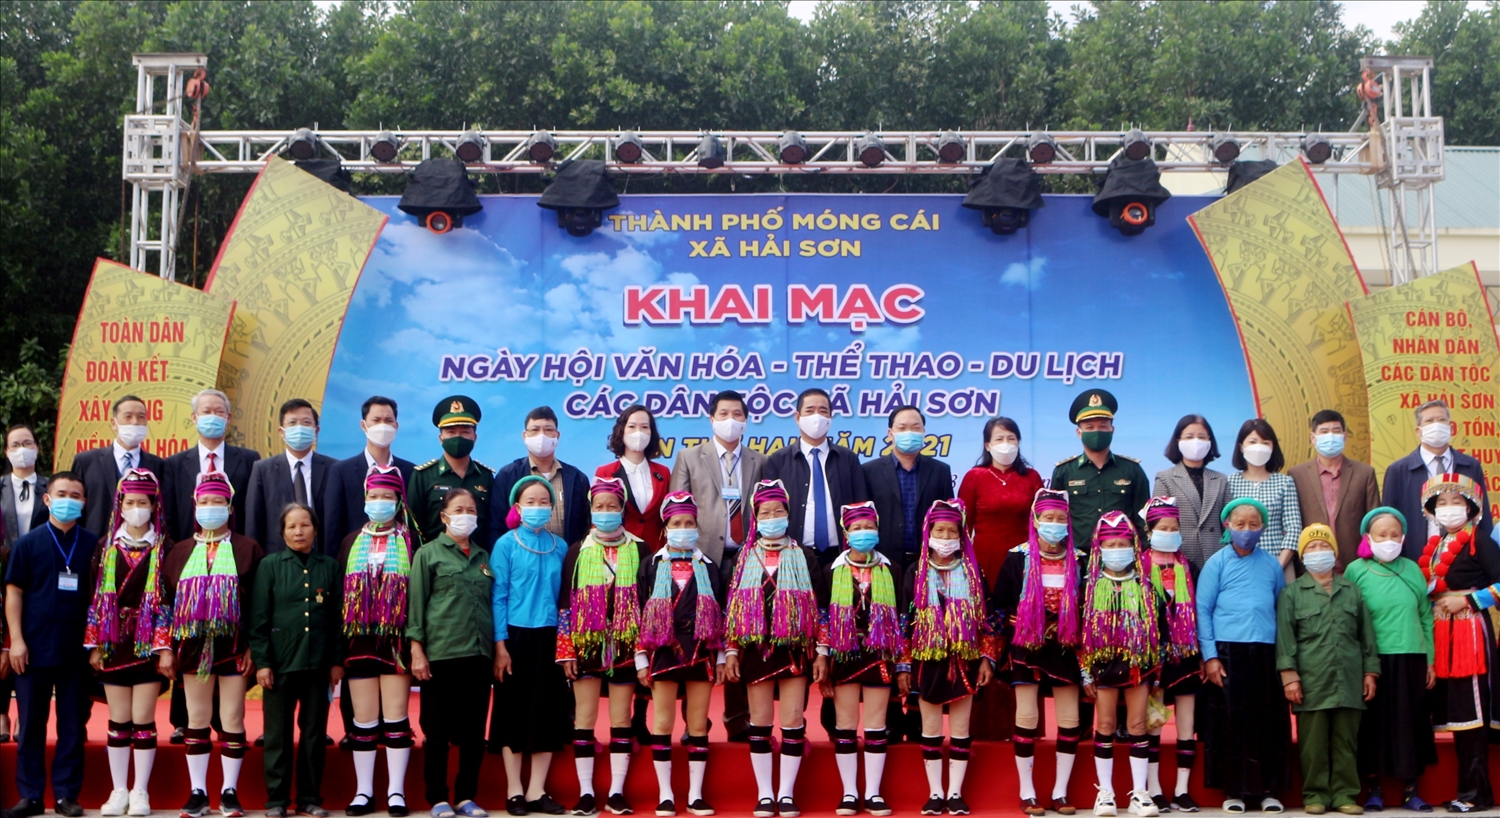 Ngày hội là sự gắn kết tinh thân đoàn kết của Nhân dân các dân tộc vùng Đông Bắc, tỉnh Quảng Ninh